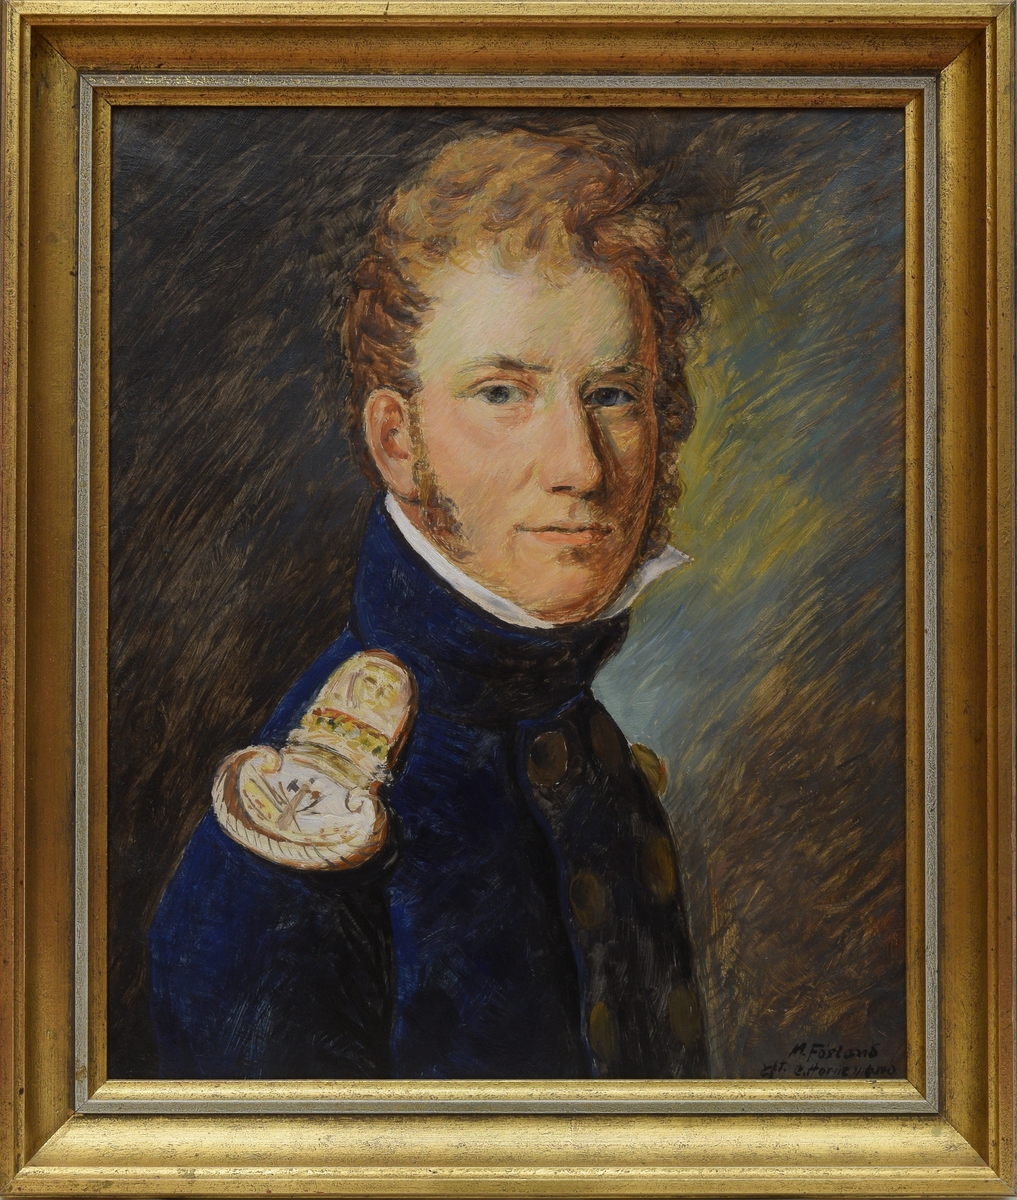 Portrett av major Julius Fredrik Arenfeldt (1794-1825). Majoren er portrettert fra siden, i halvprofil med høyre skulder vendt ut. Ansiktet og blikket vender ut mot betrakteren. Majoren er kledd i blå unifromsjakke med gullfarget skulderpryd (epålett) og runde knapper foran. Jakken har høy krage/hals, og en hvit skjorte stikker ut av jakken over kragen, like under masjorens ansikt. Bakgrunnen er mørk brun, på høyre side er ansiktet omgitt av gule og blå fargetoner.